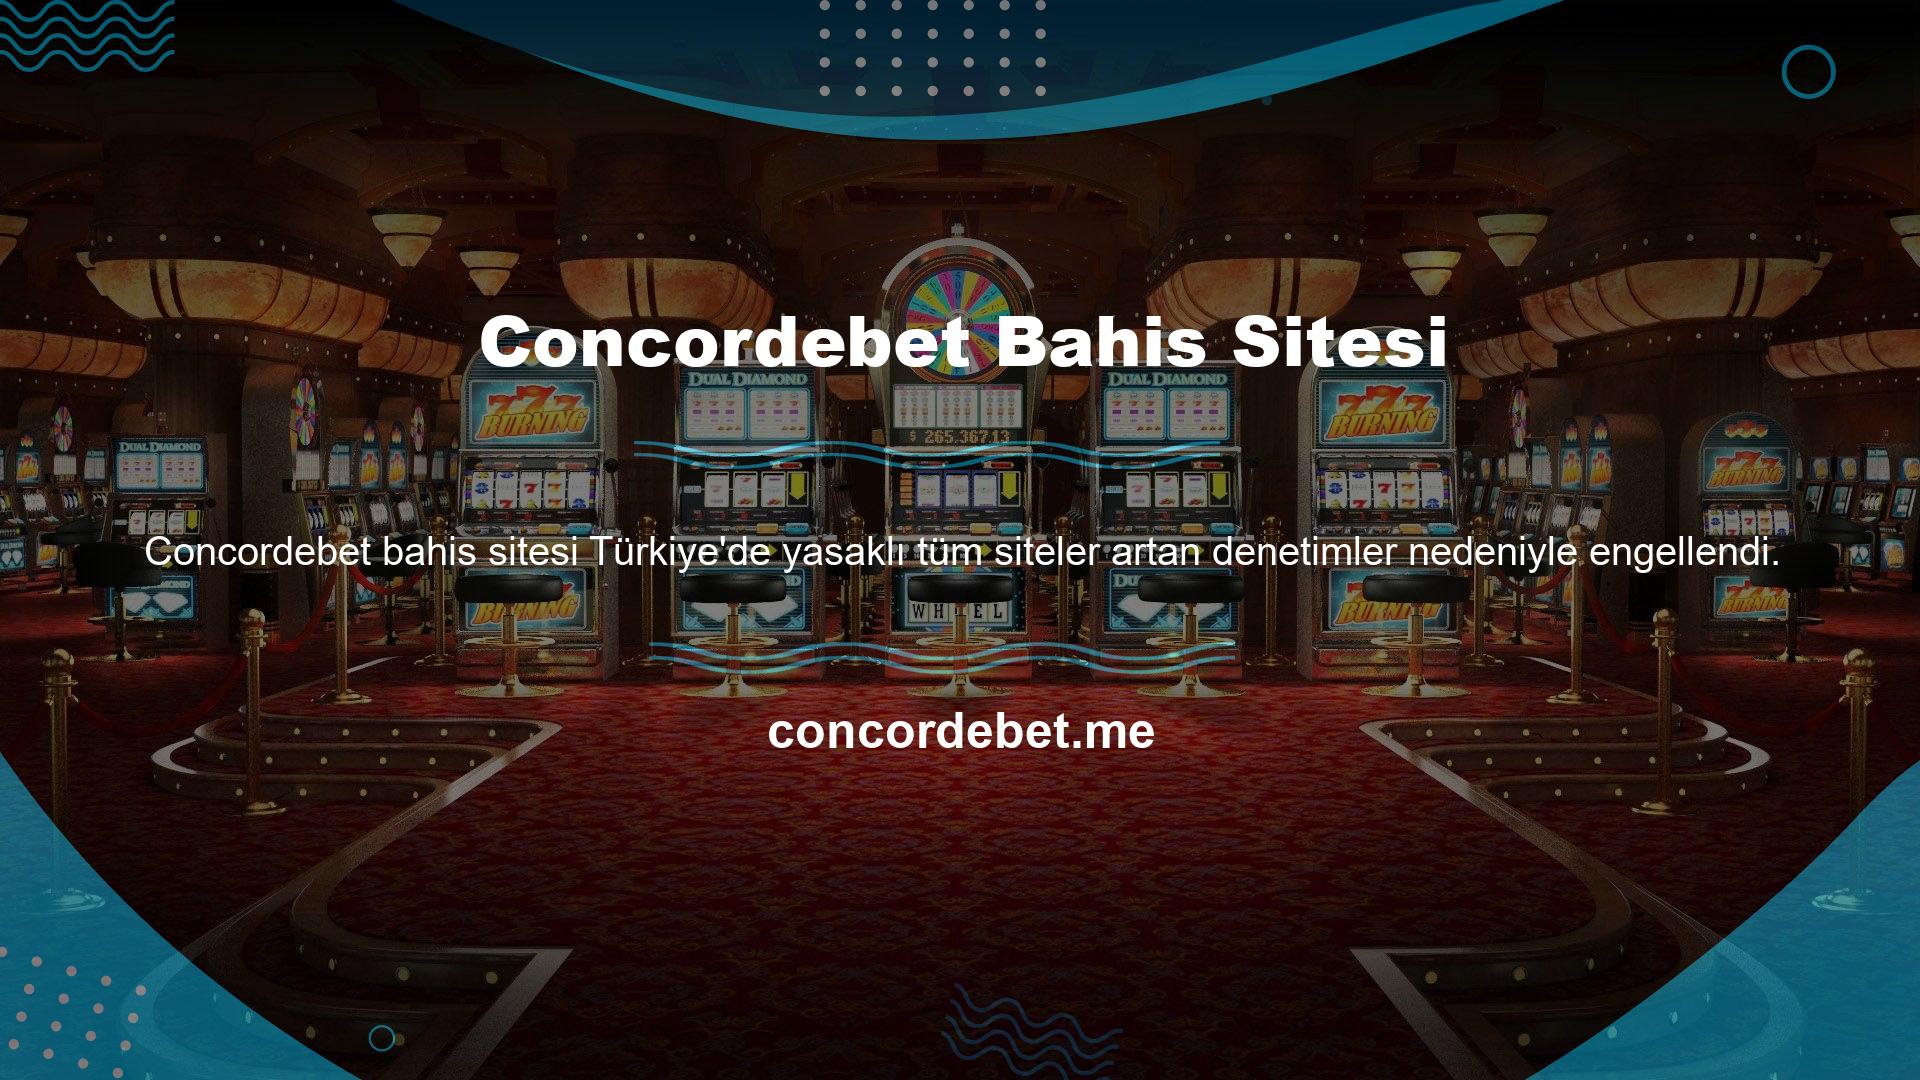 Yurt dışından casino oyunları oynama imkanı sunan Concordebet sitesi, ülke tarafından yasaklanan sitelerden biri olduğu için sık sık engelleniyor